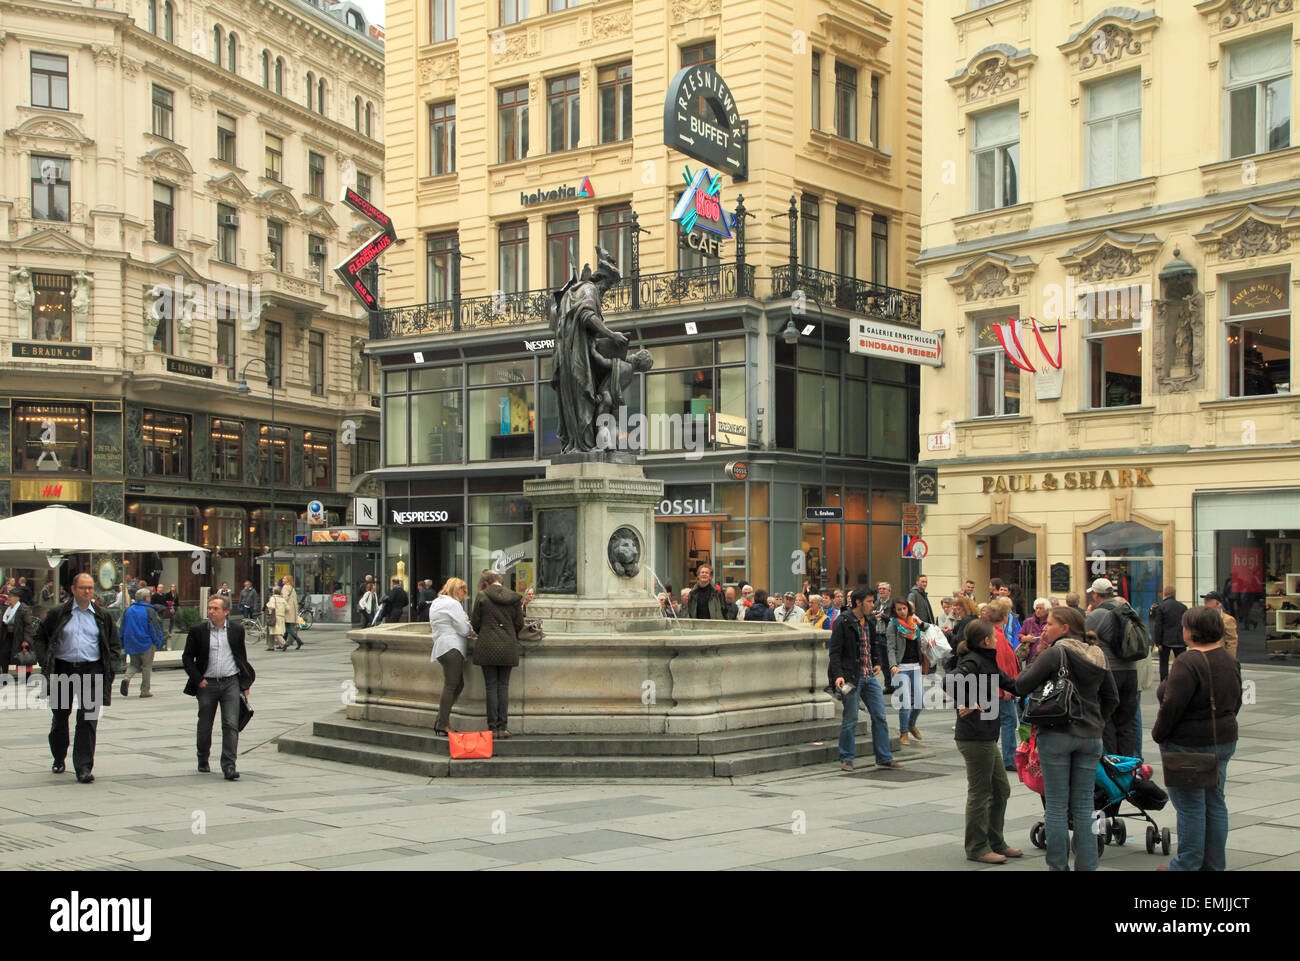 Austria, Vienna, Graben, fountain, people, street scene, Stock Photo